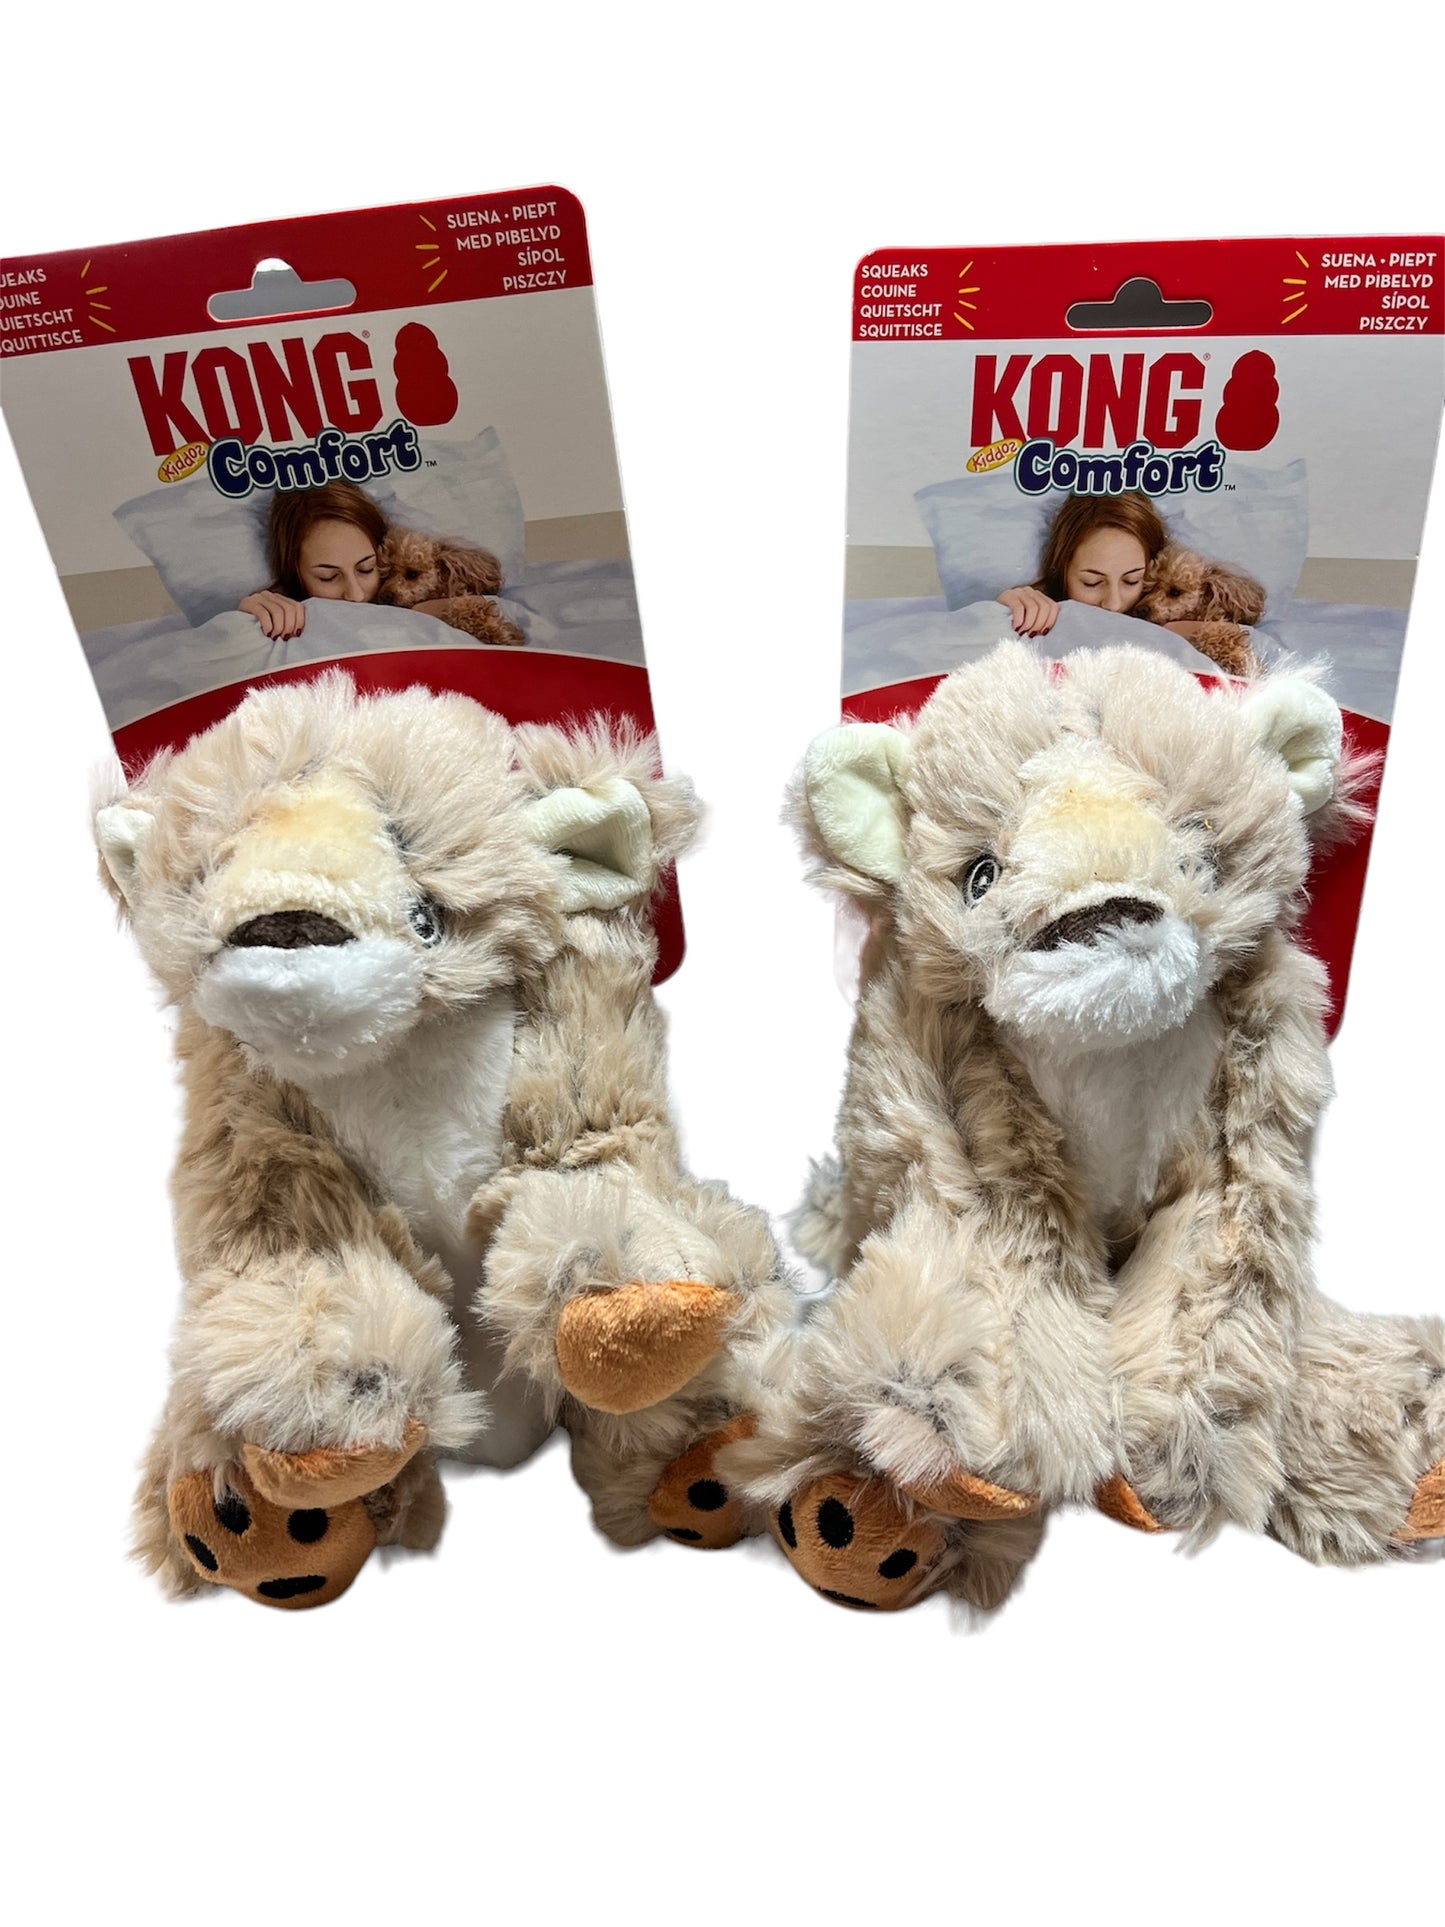 Kong Comfort Lion